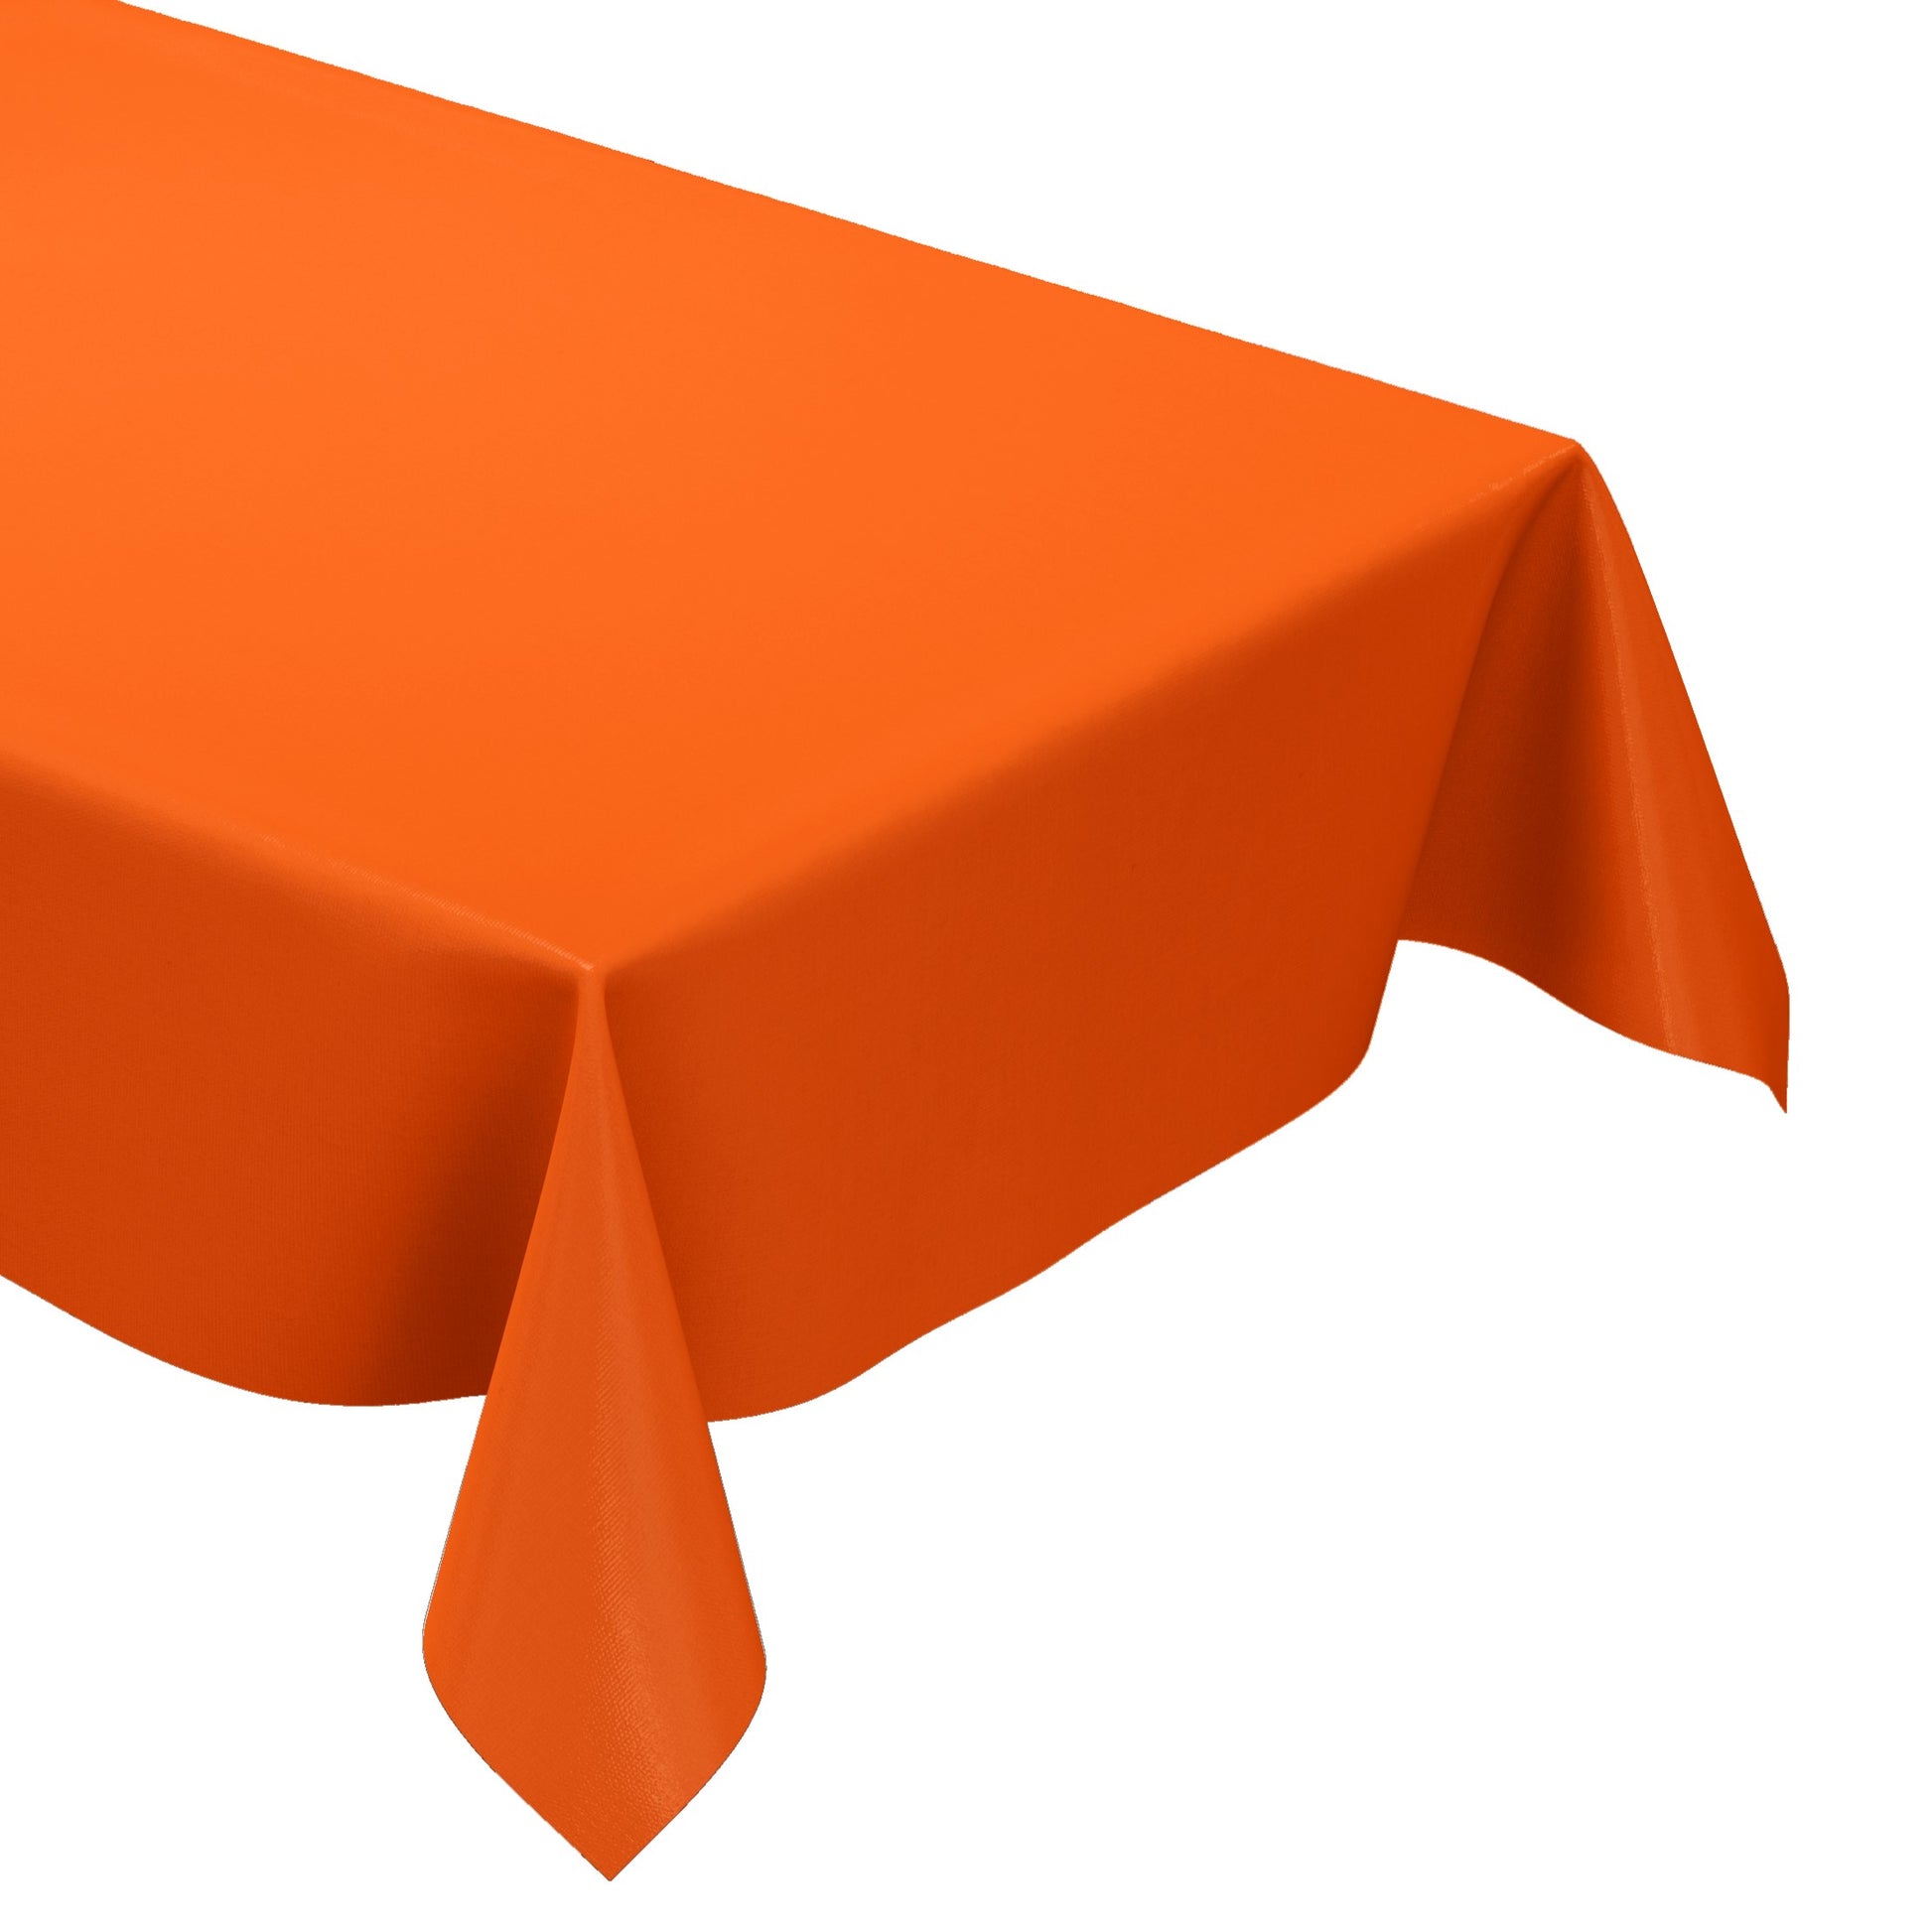 Wachstuchtischdecke Tischdecke einfarbig orange uni eckig rund oval kaufen wachstuchshop24.de